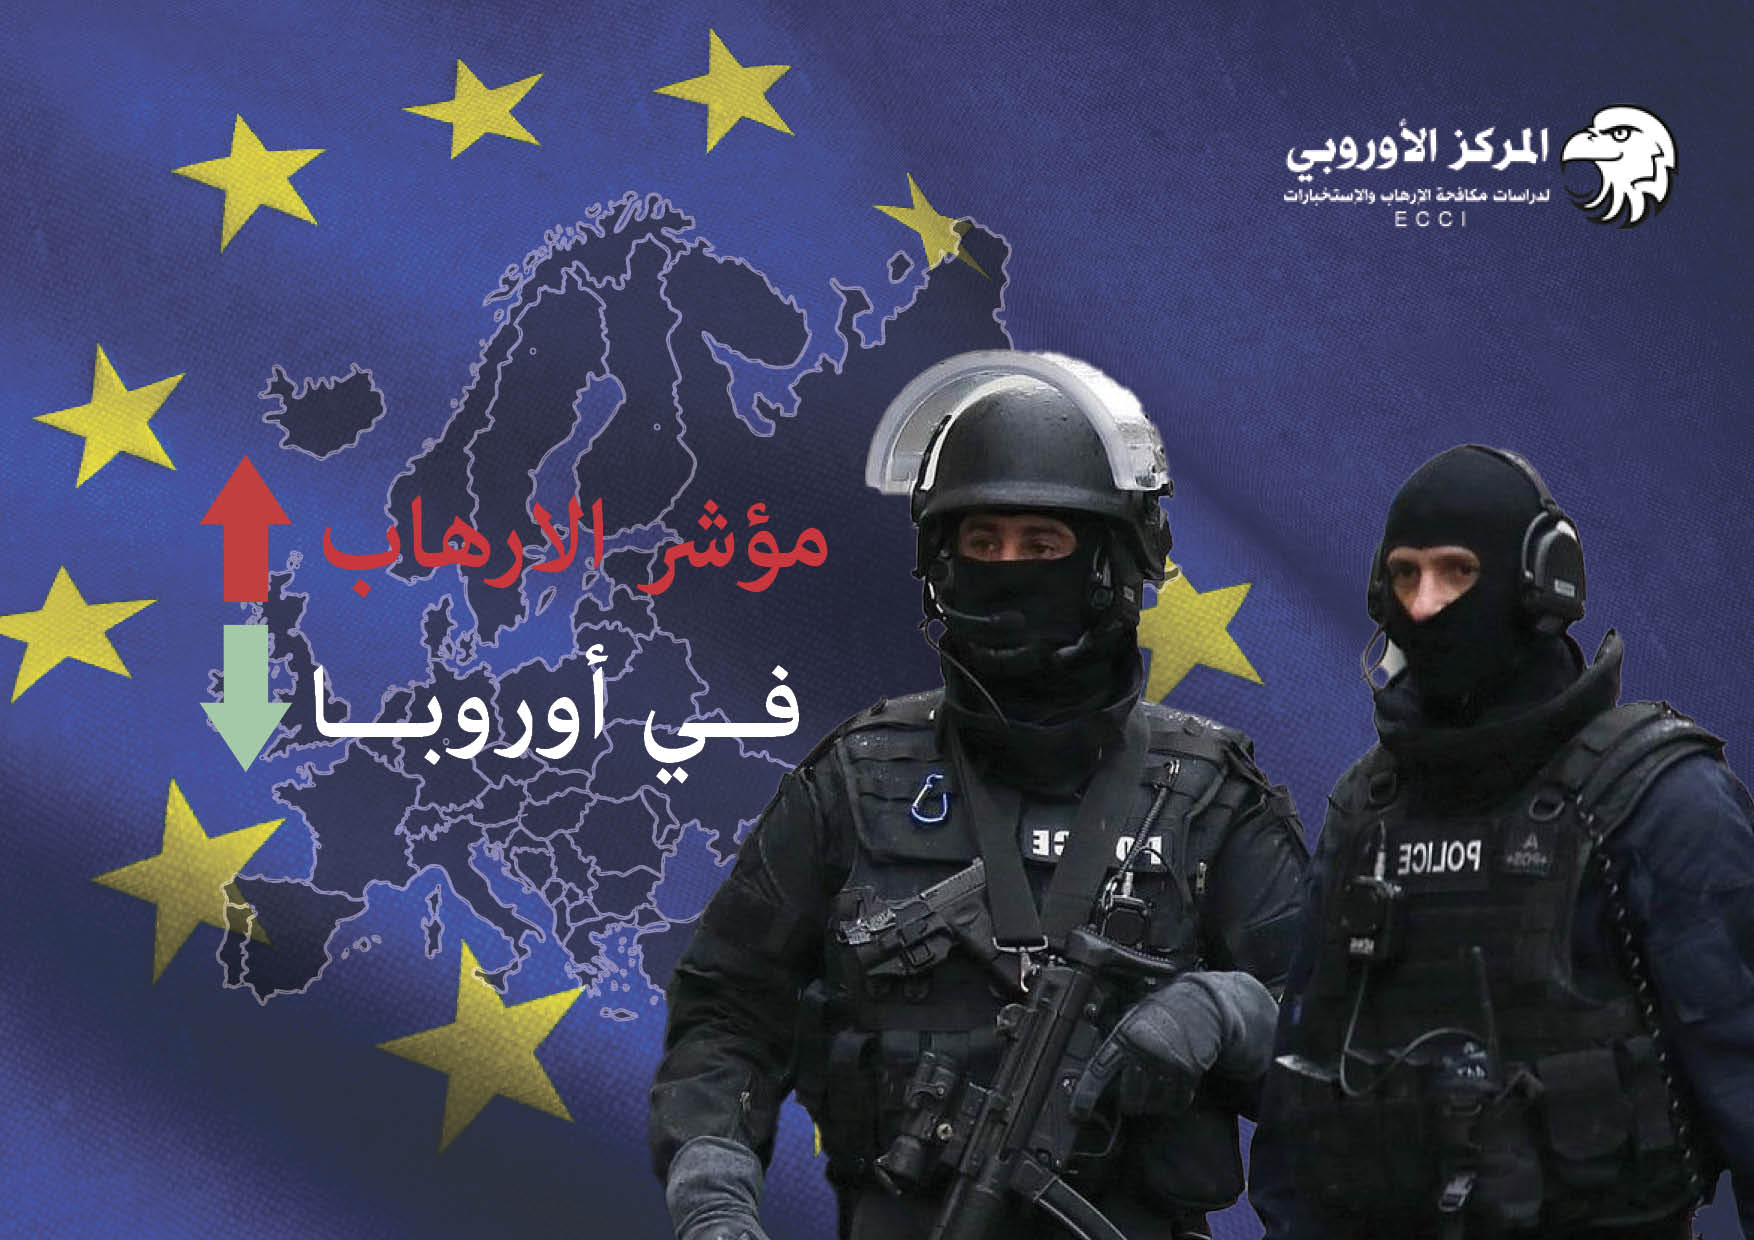 مؤشر الإرهاب في أوروبا 2021